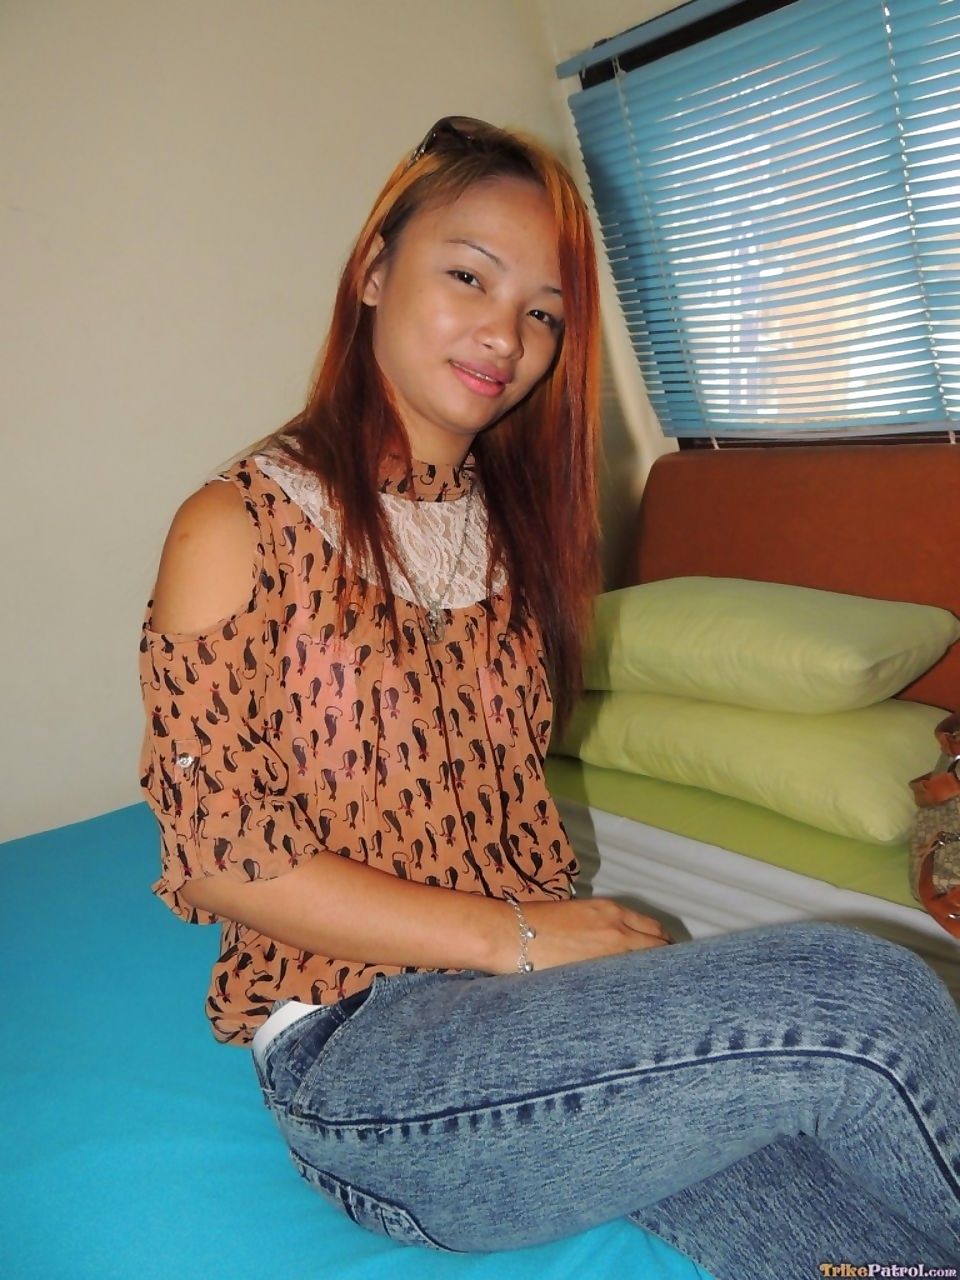 22 năm già Filipina Ayumi chọn lên trong những siêu thị và chết tiệt trên máy quay cho Tiền mặt